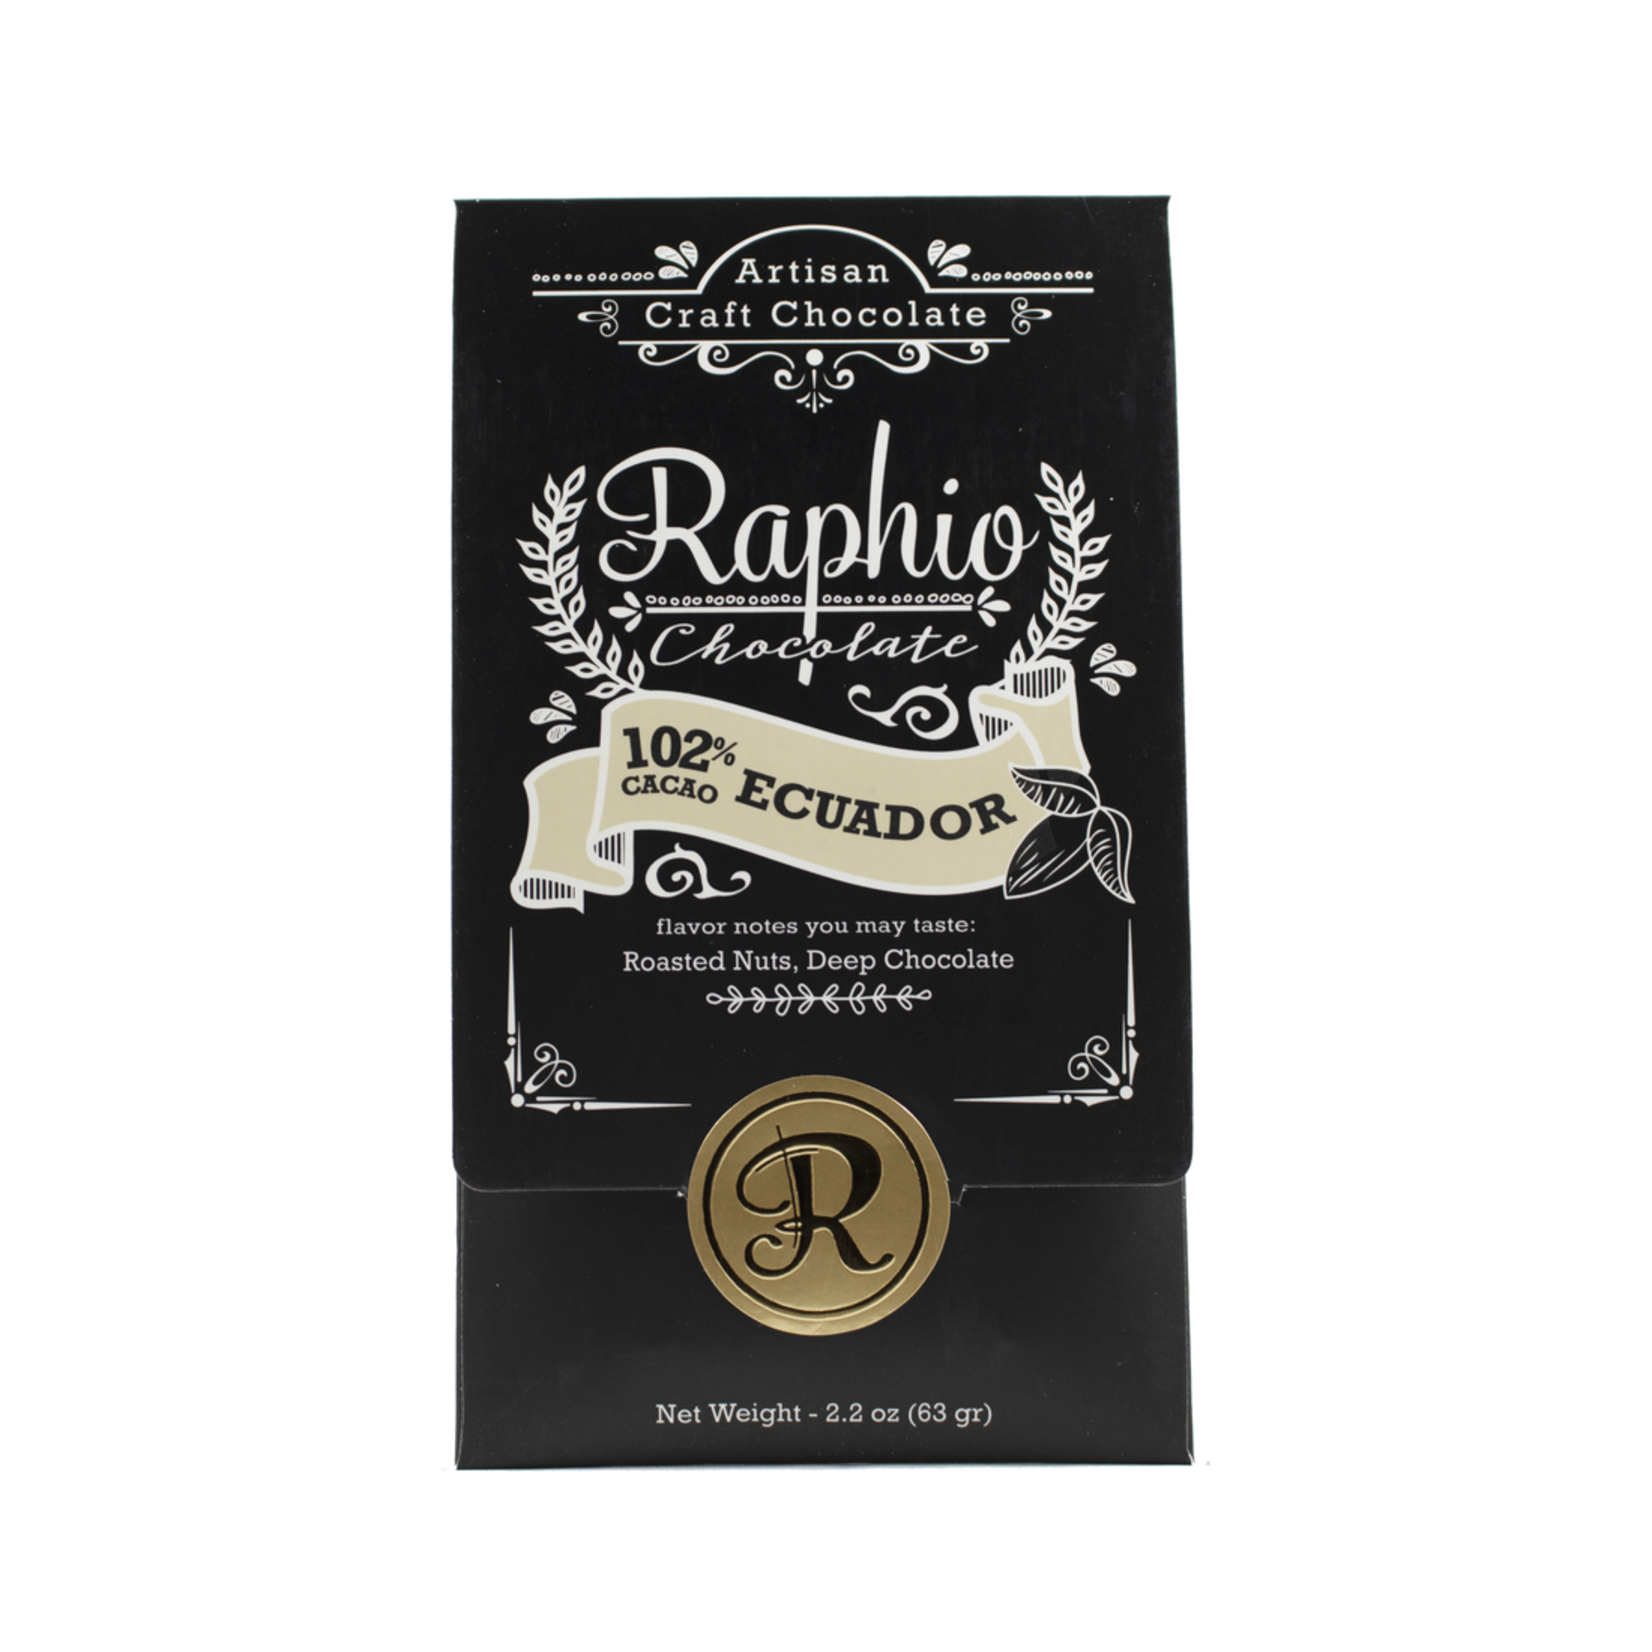 Raphio Chocolate 102% Ecuador dark chocolate